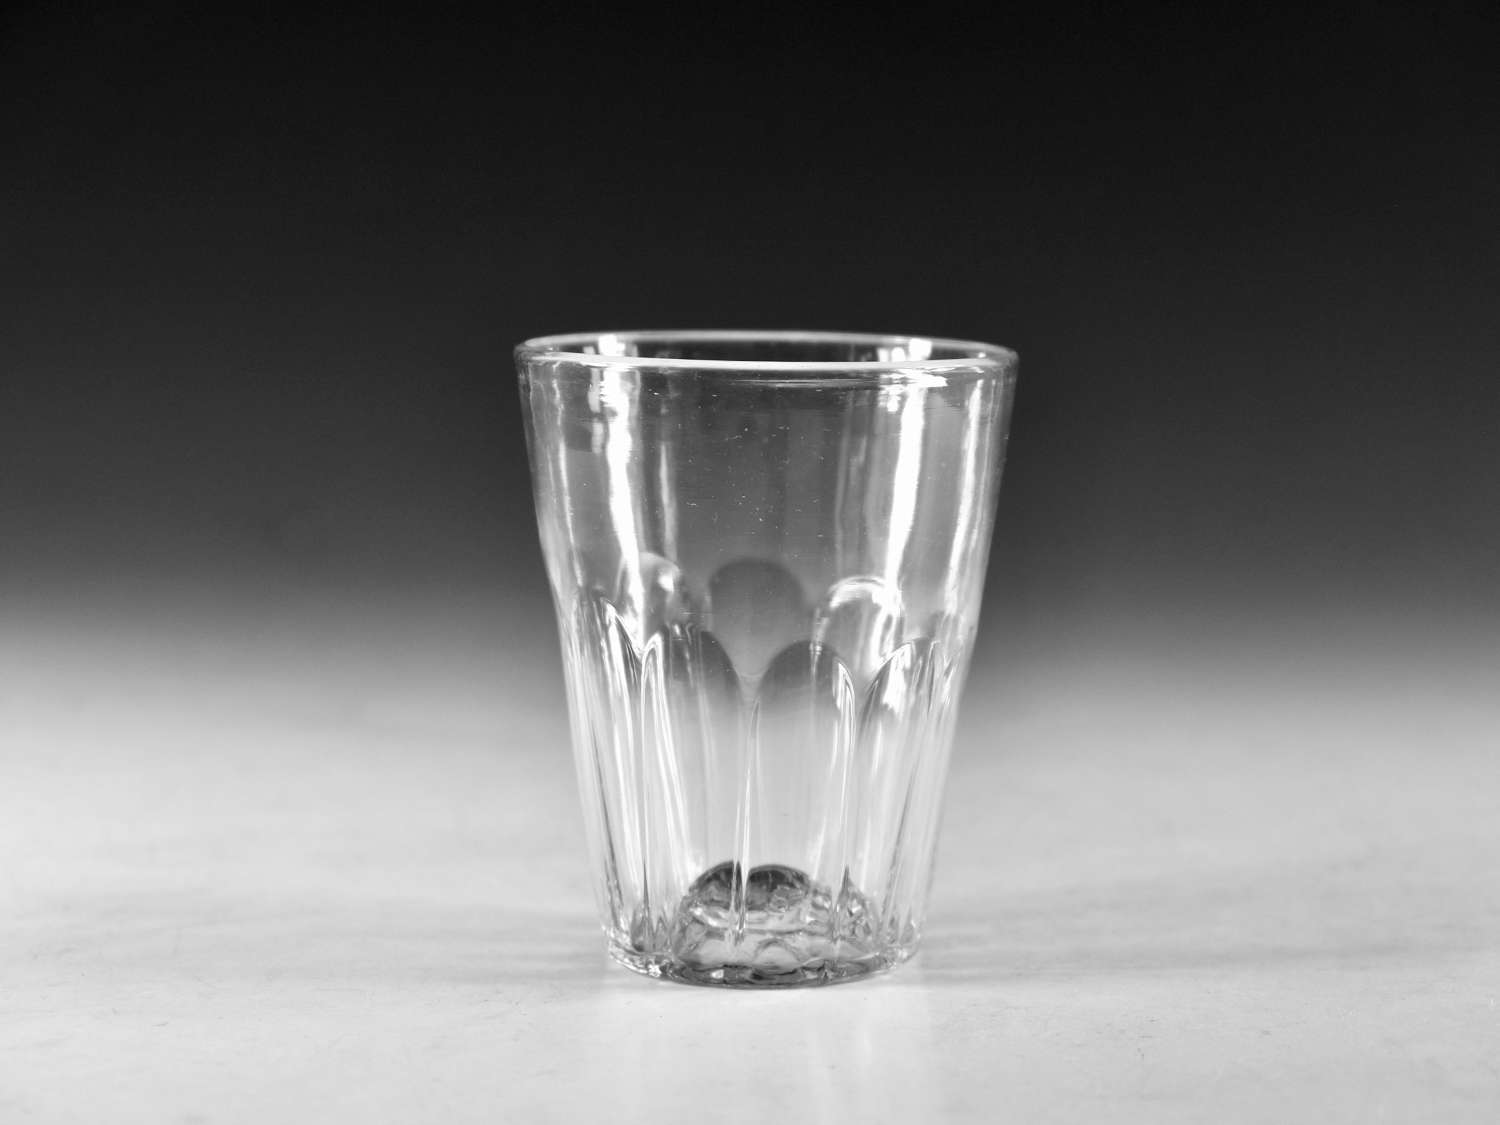 Antique glass - tumbler English c1800